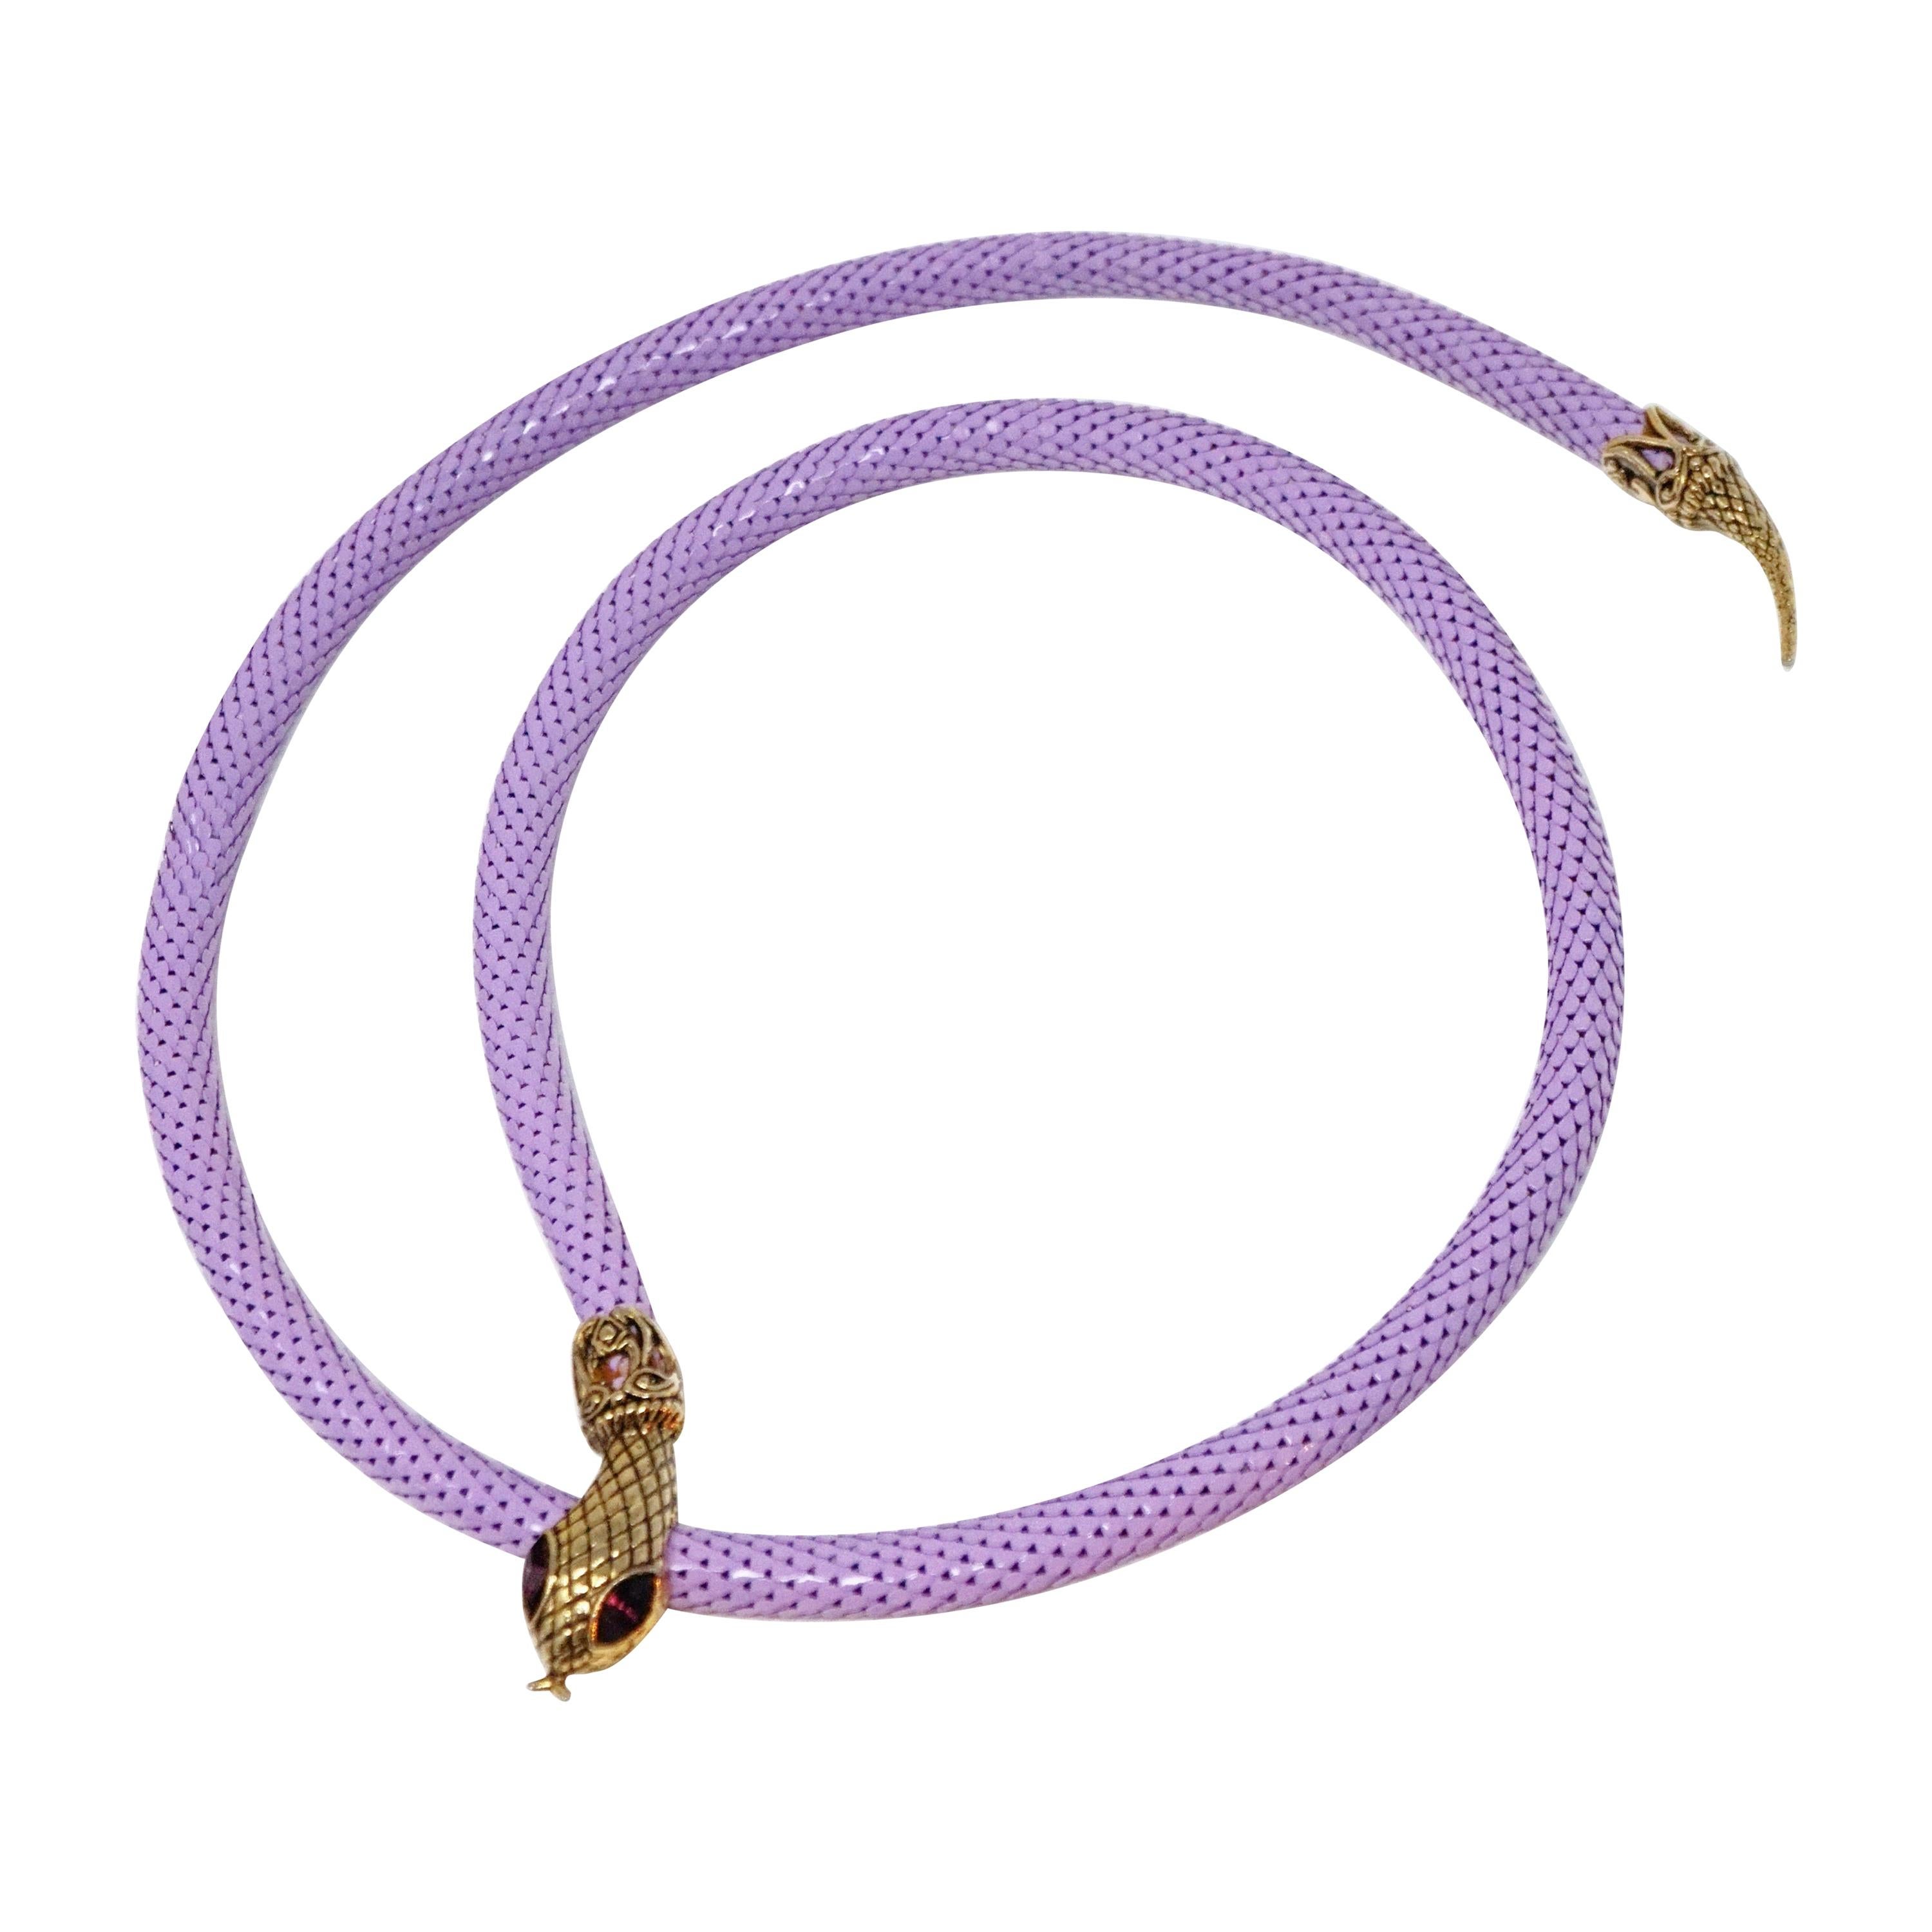 1980s Lavender Mesh Snake Belt or Necklace by DL Auld Co, Signed